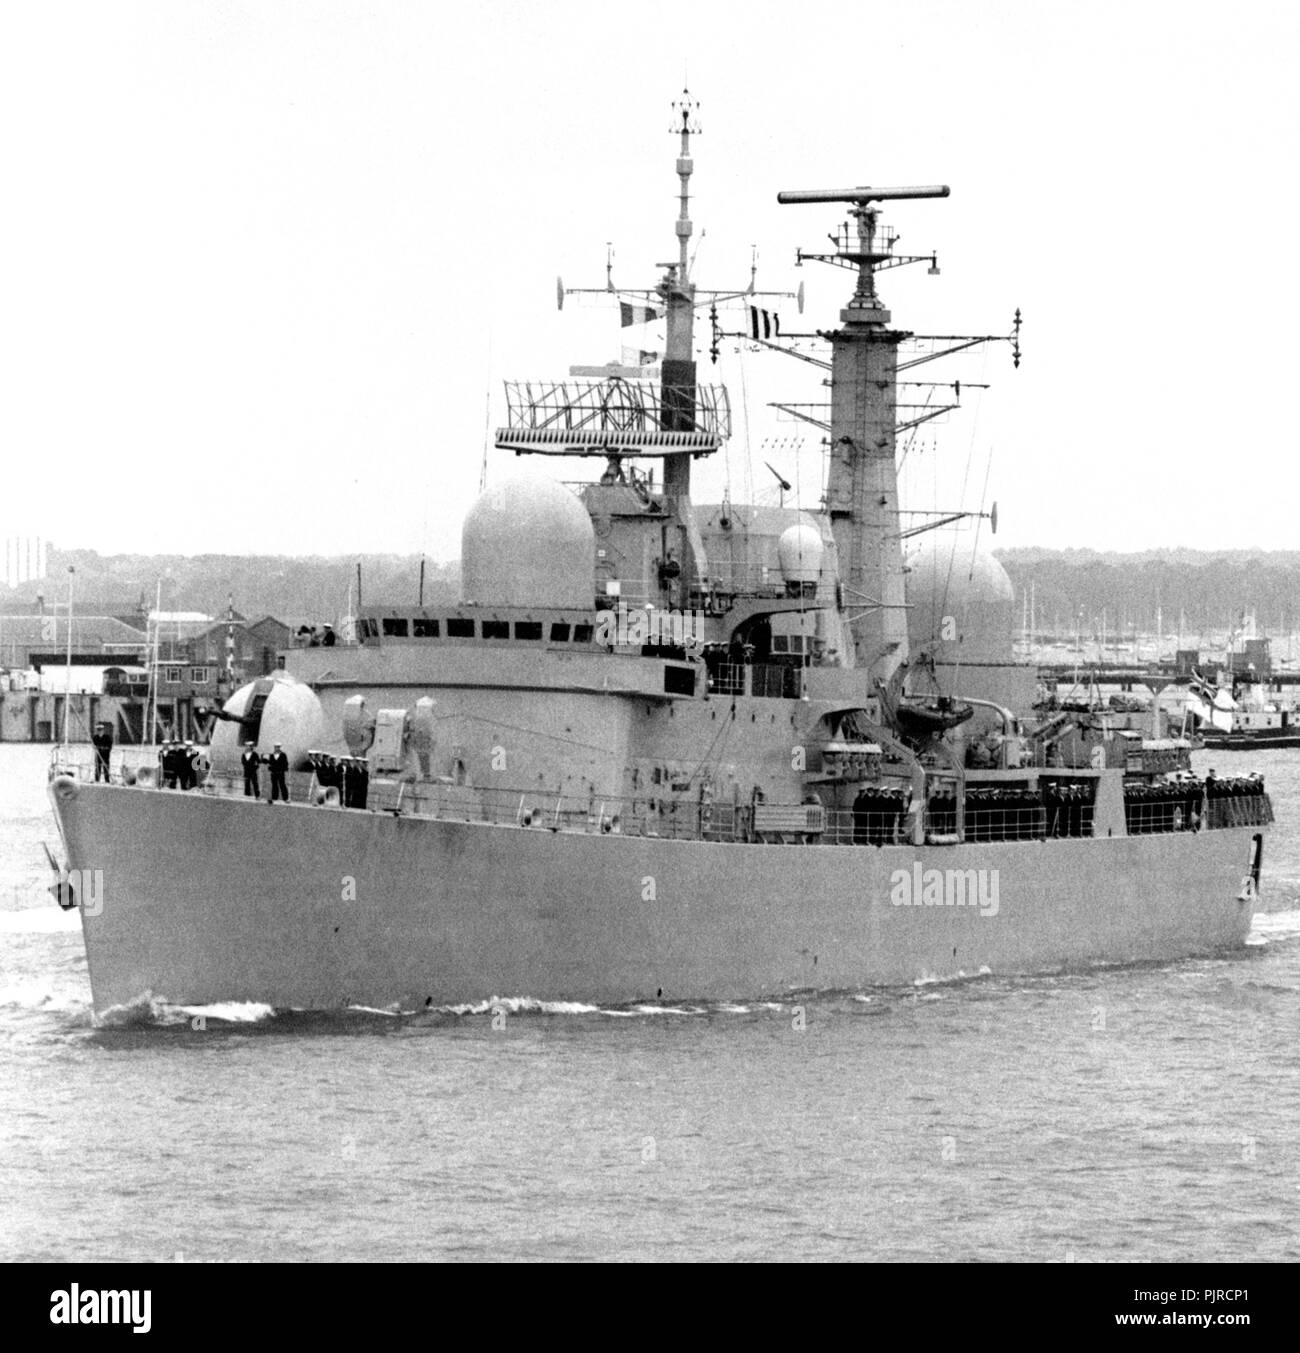 AJAXNETPHOTO. 18 Juni, 1982, Portsmouth, England. - Zerstörer fährt - HMS SOUTHAMPTON AUS DEM HAFEN VORANGEGANGEN FÜR DEN SÜDATLANTIK. Foto: SIMON BARNETT/AJAX REF: HDD/NA 821806 1 Stockfoto